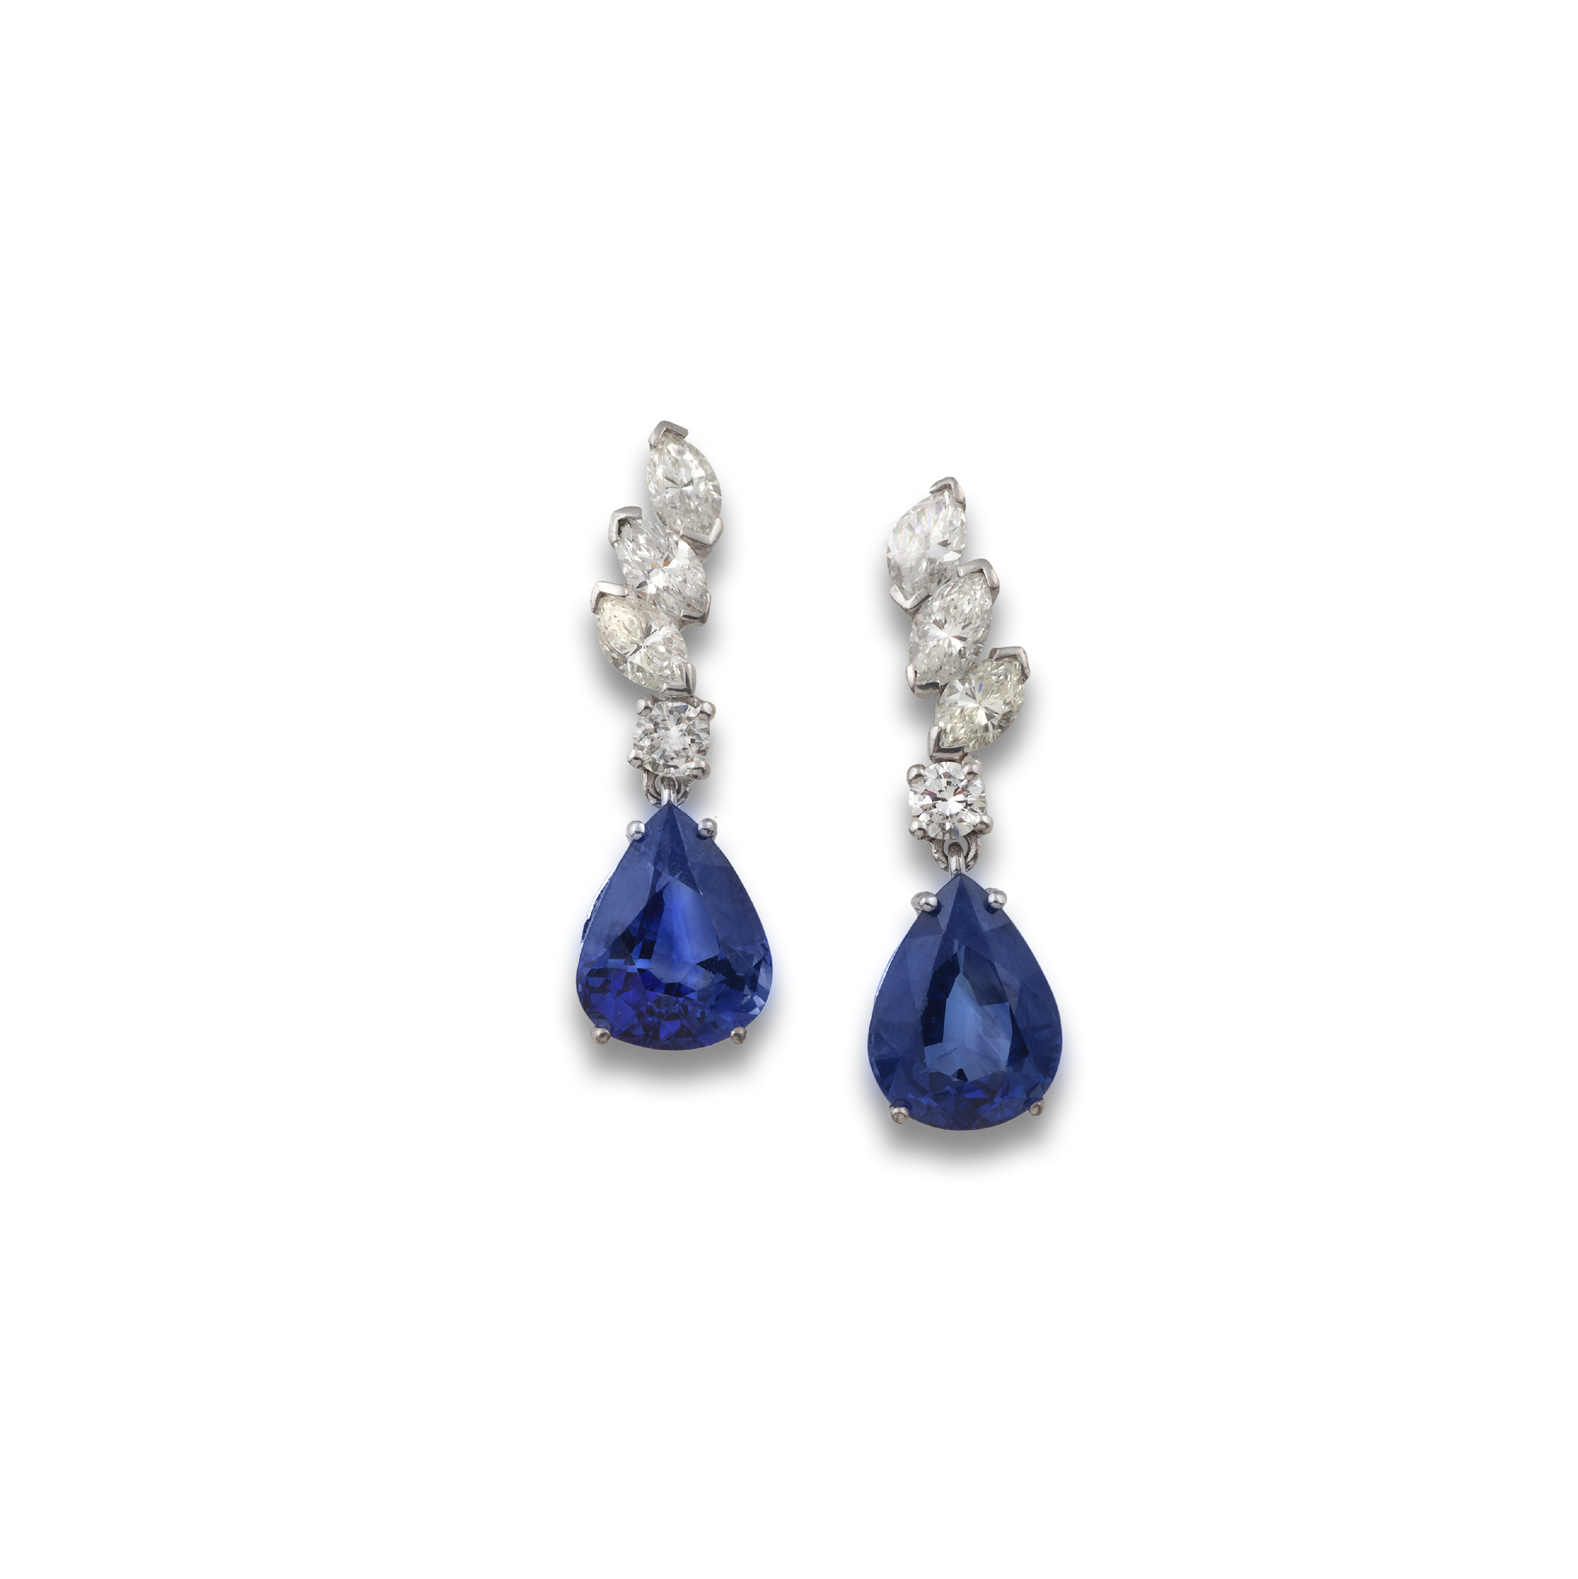 Long sapphire earrings